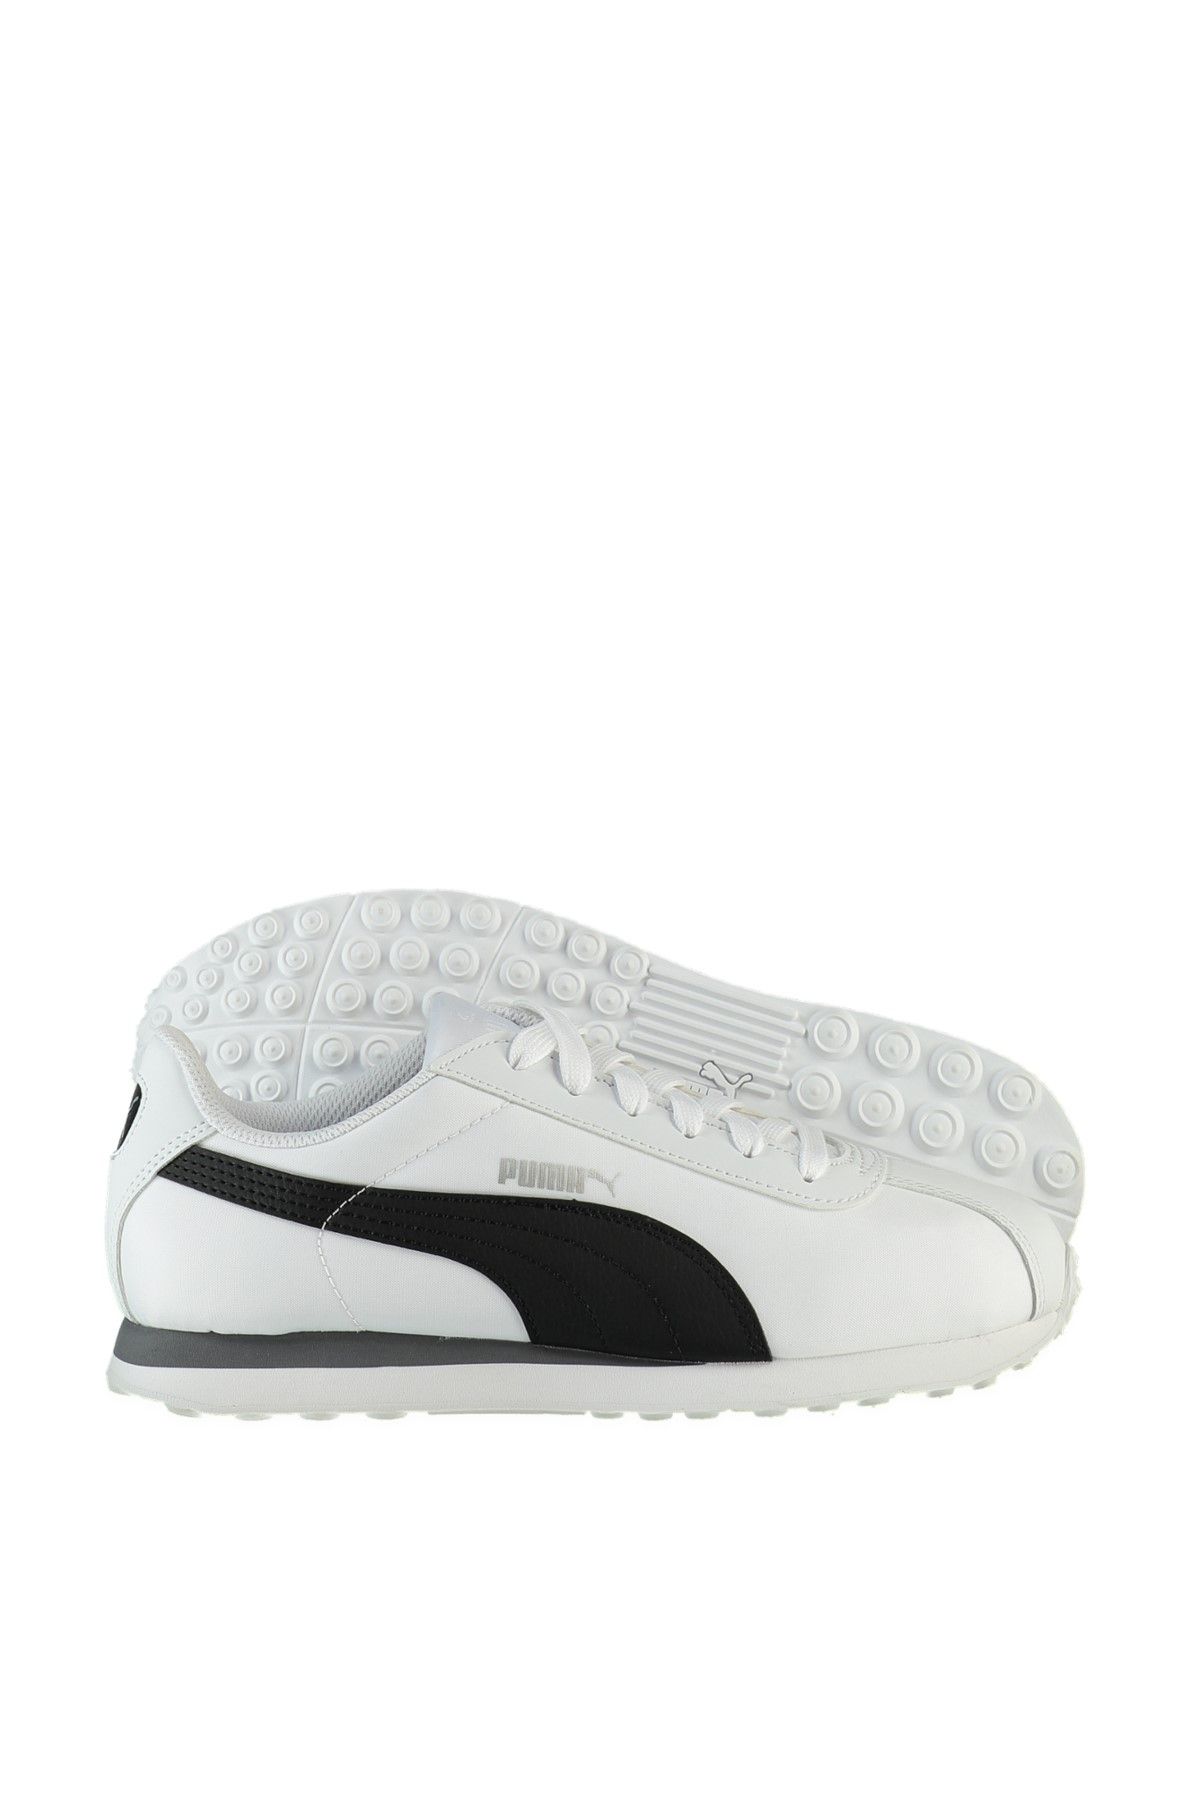 Puma Turin Nl Beyaz SIYAH Erkek Sneaker 100385531